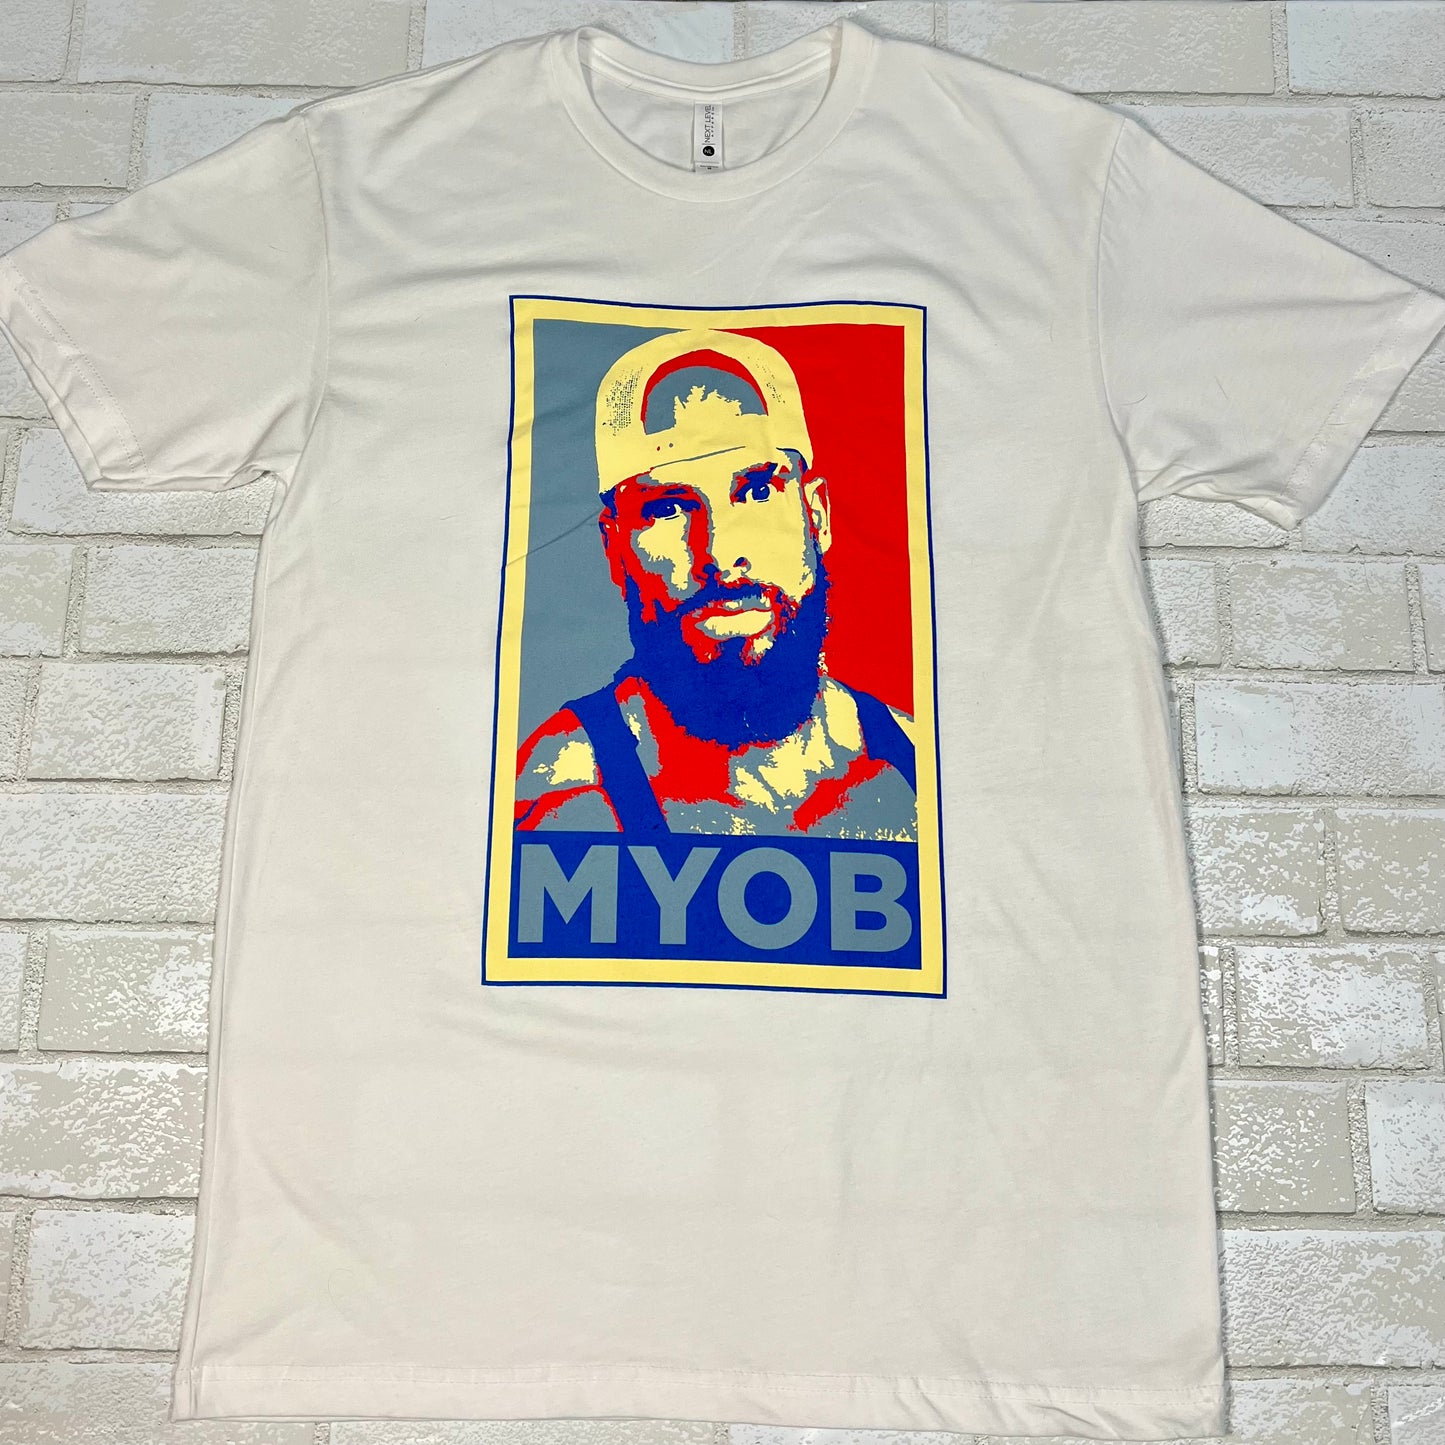 MYOB Shirt - White